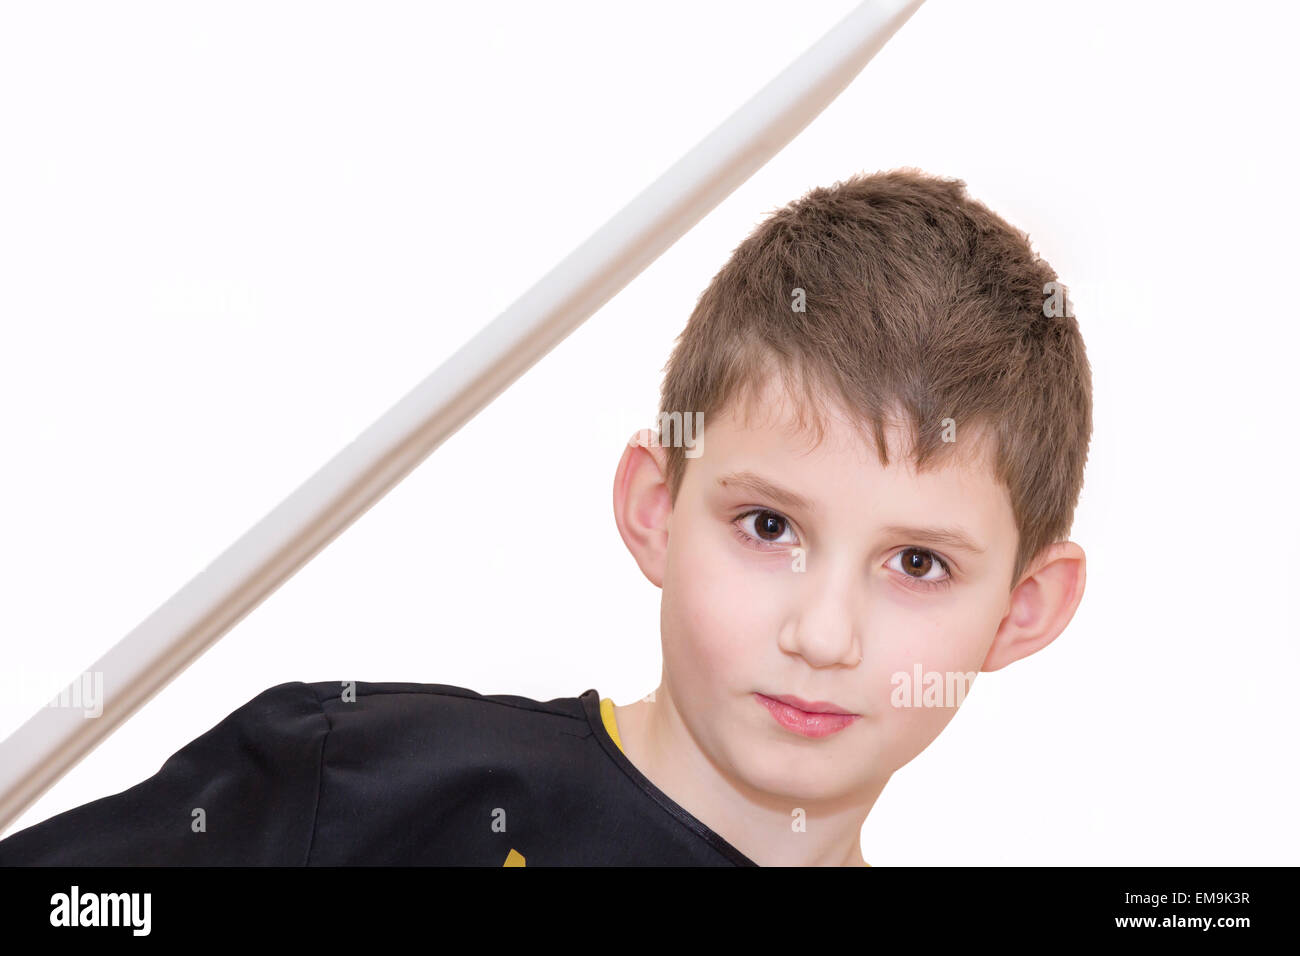 Junge mit 8 Jahren kämpfen wie Karate Spieler - schwarze Ninja. Stockfoto